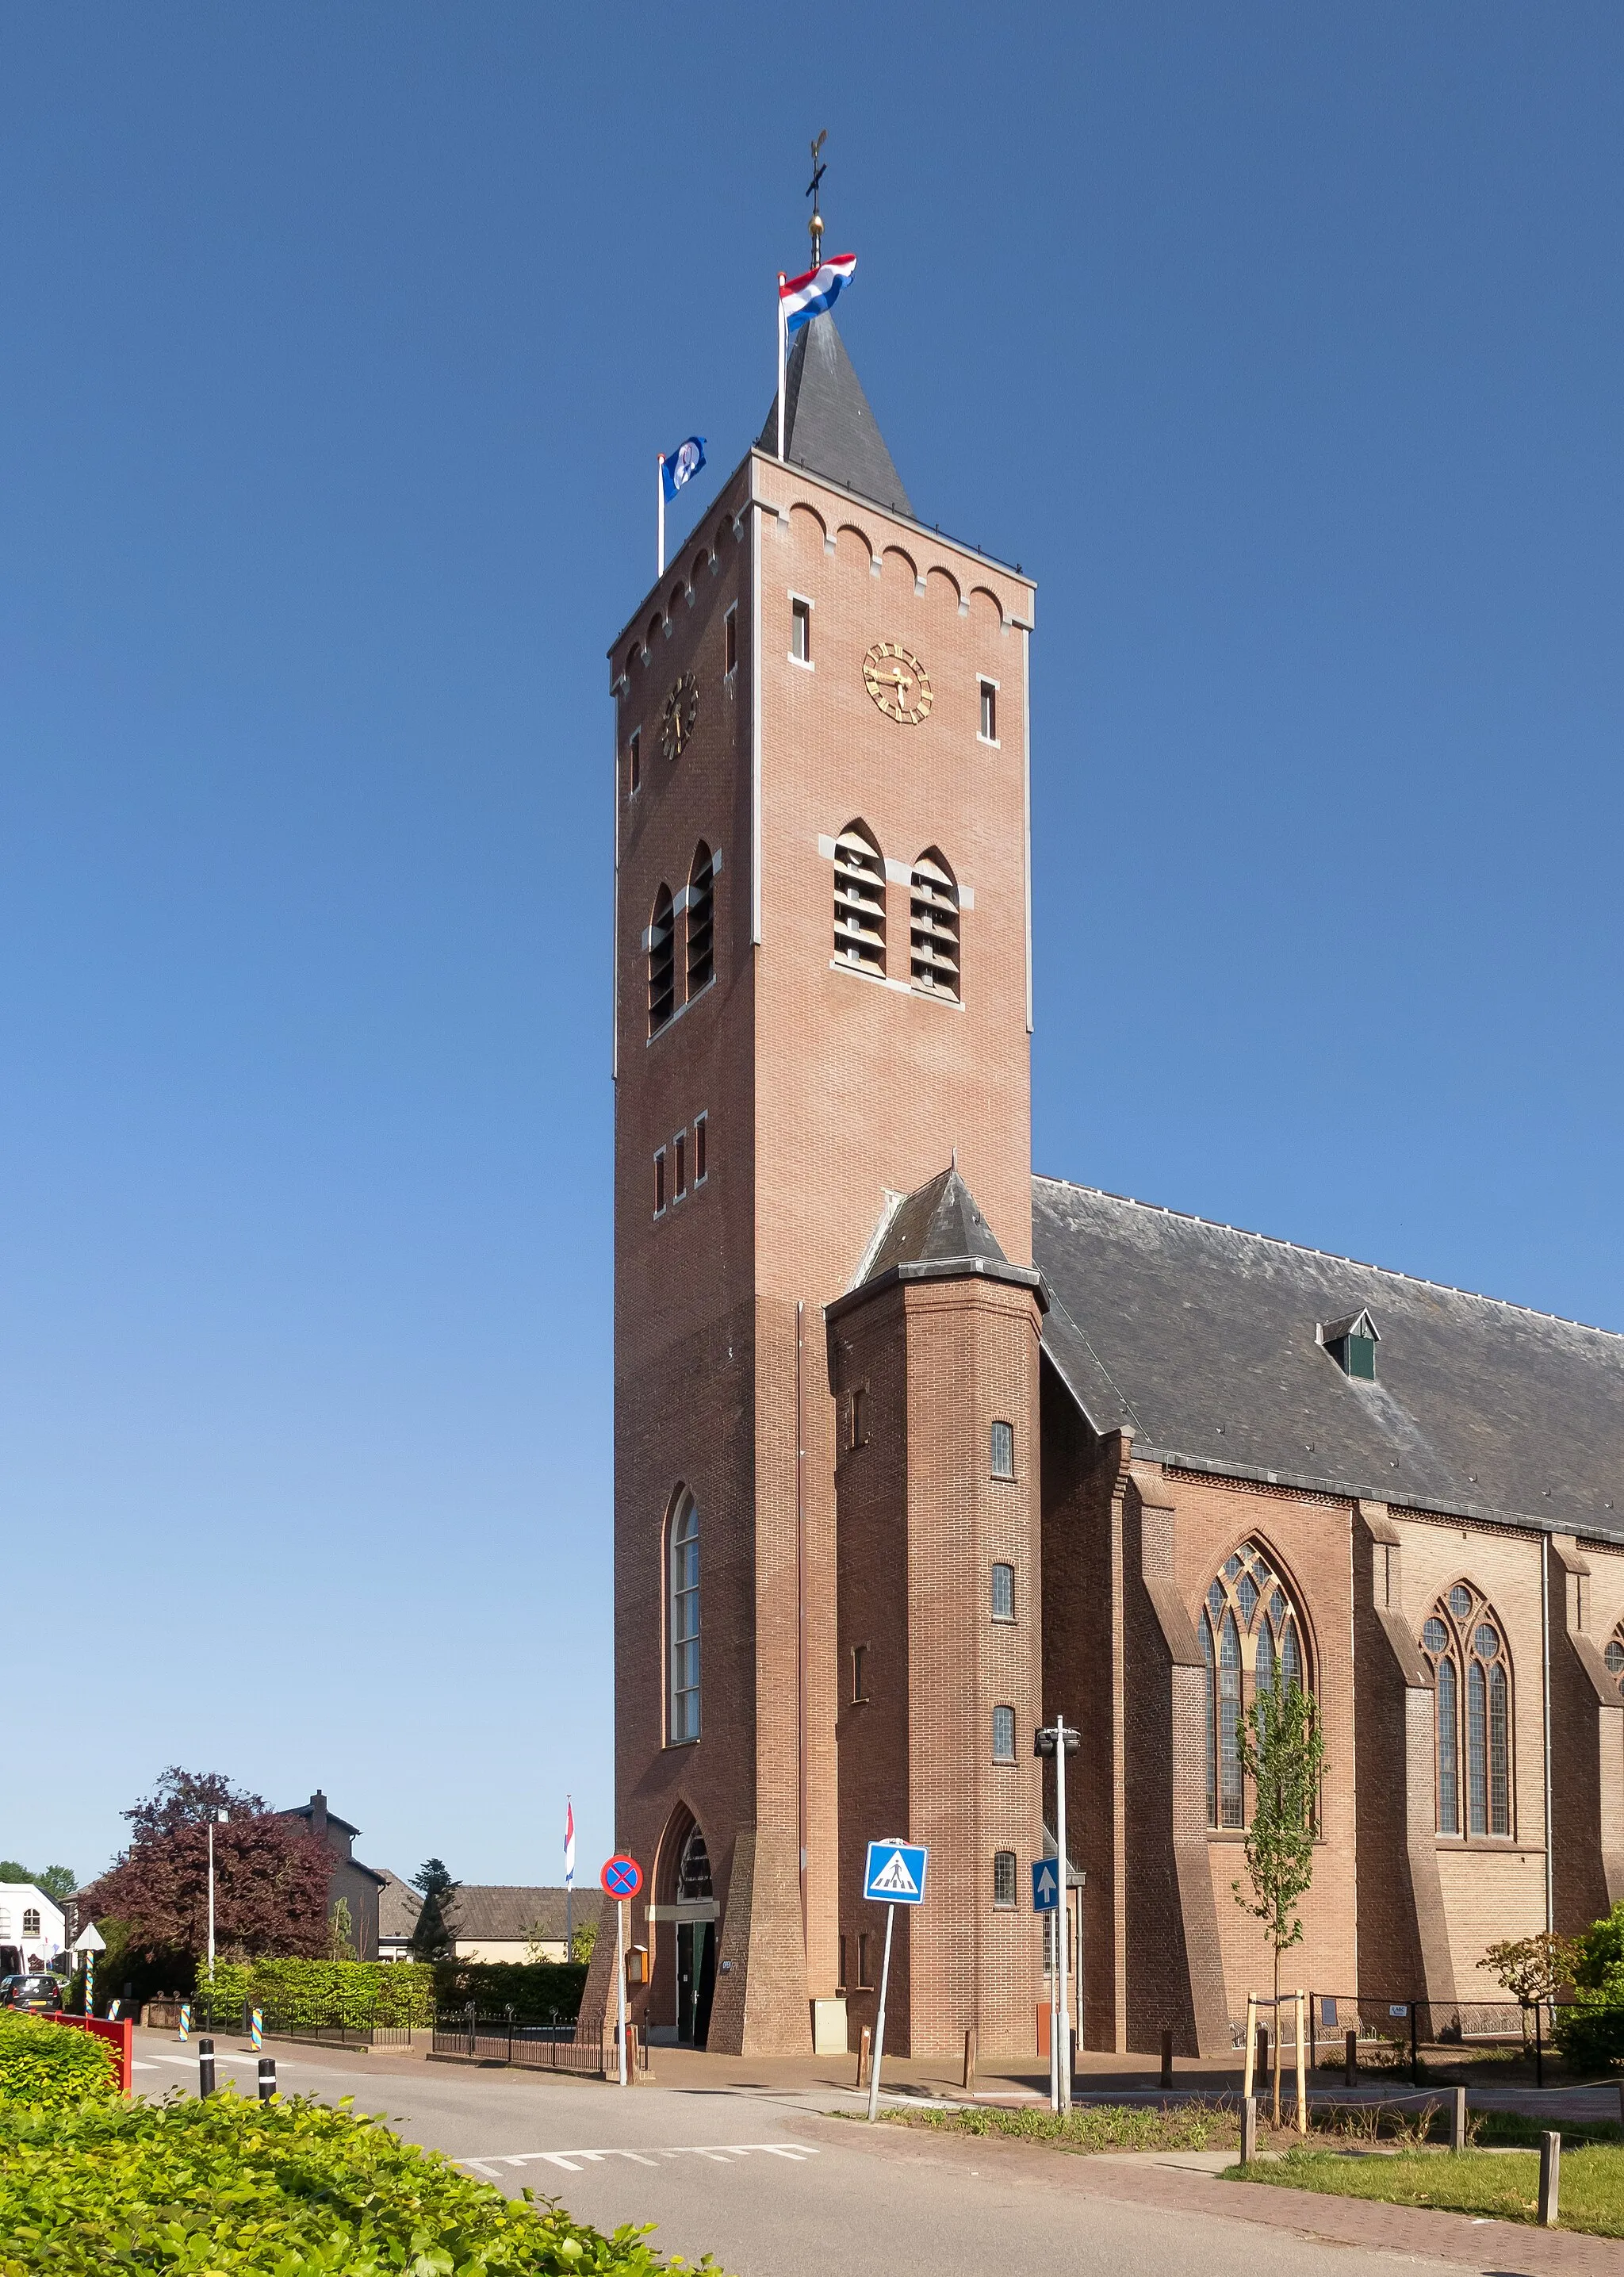 Image of Giesbeek